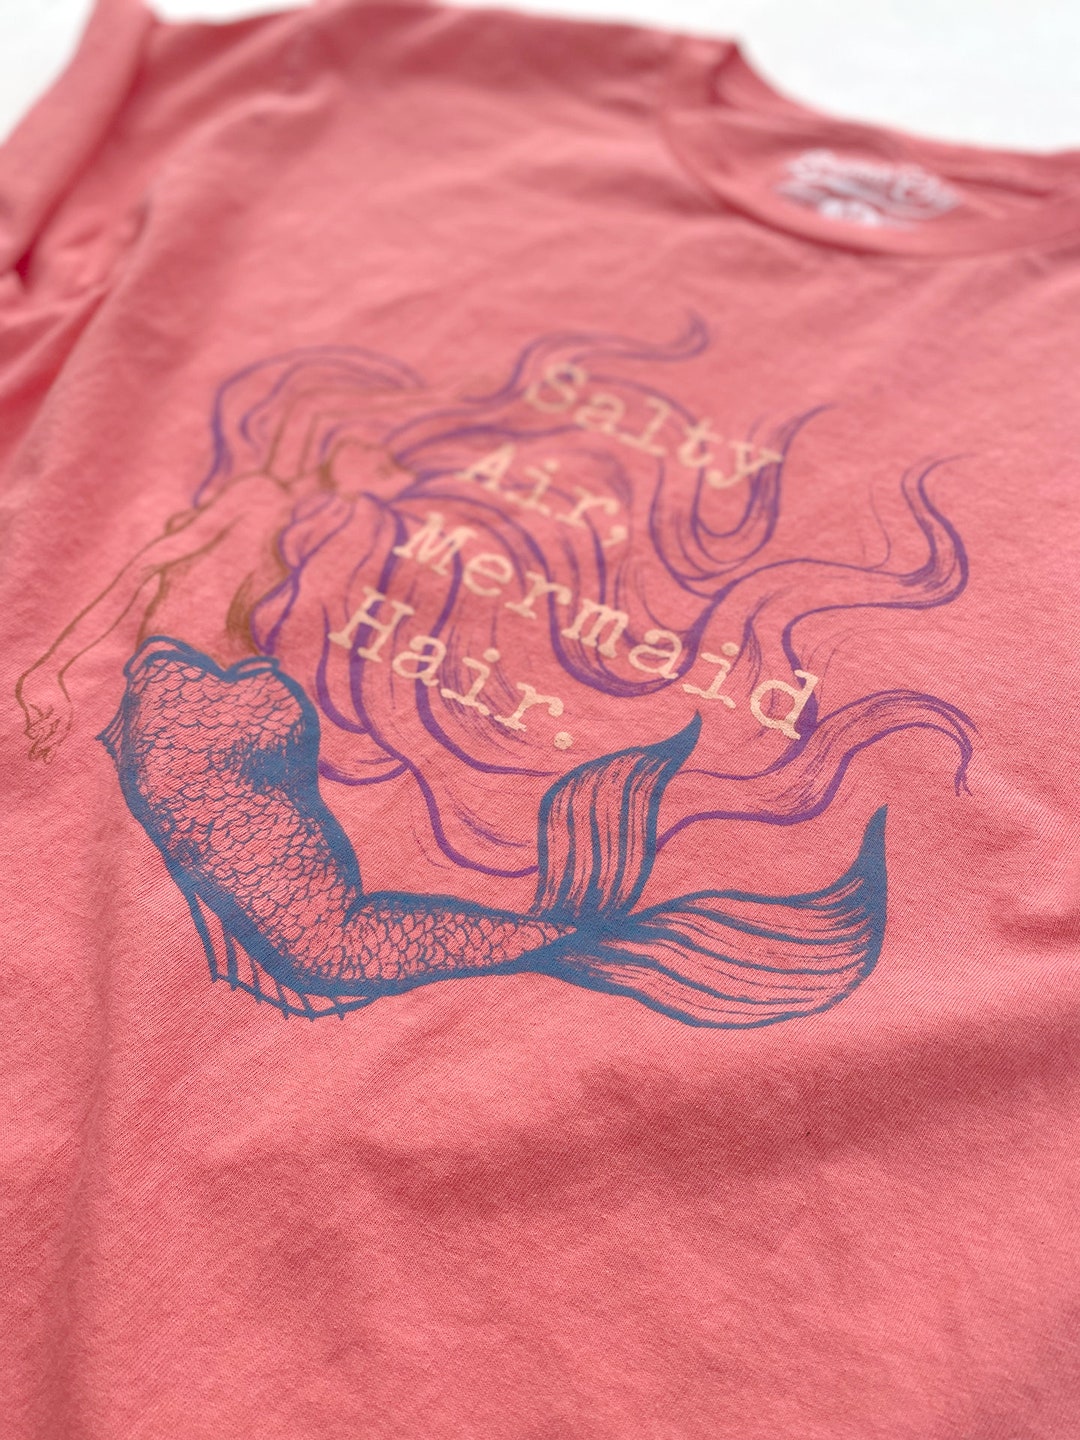 Cute Mermaid Shirt Mermaid Party T-shirt Mermaid Birthday T - Etsy